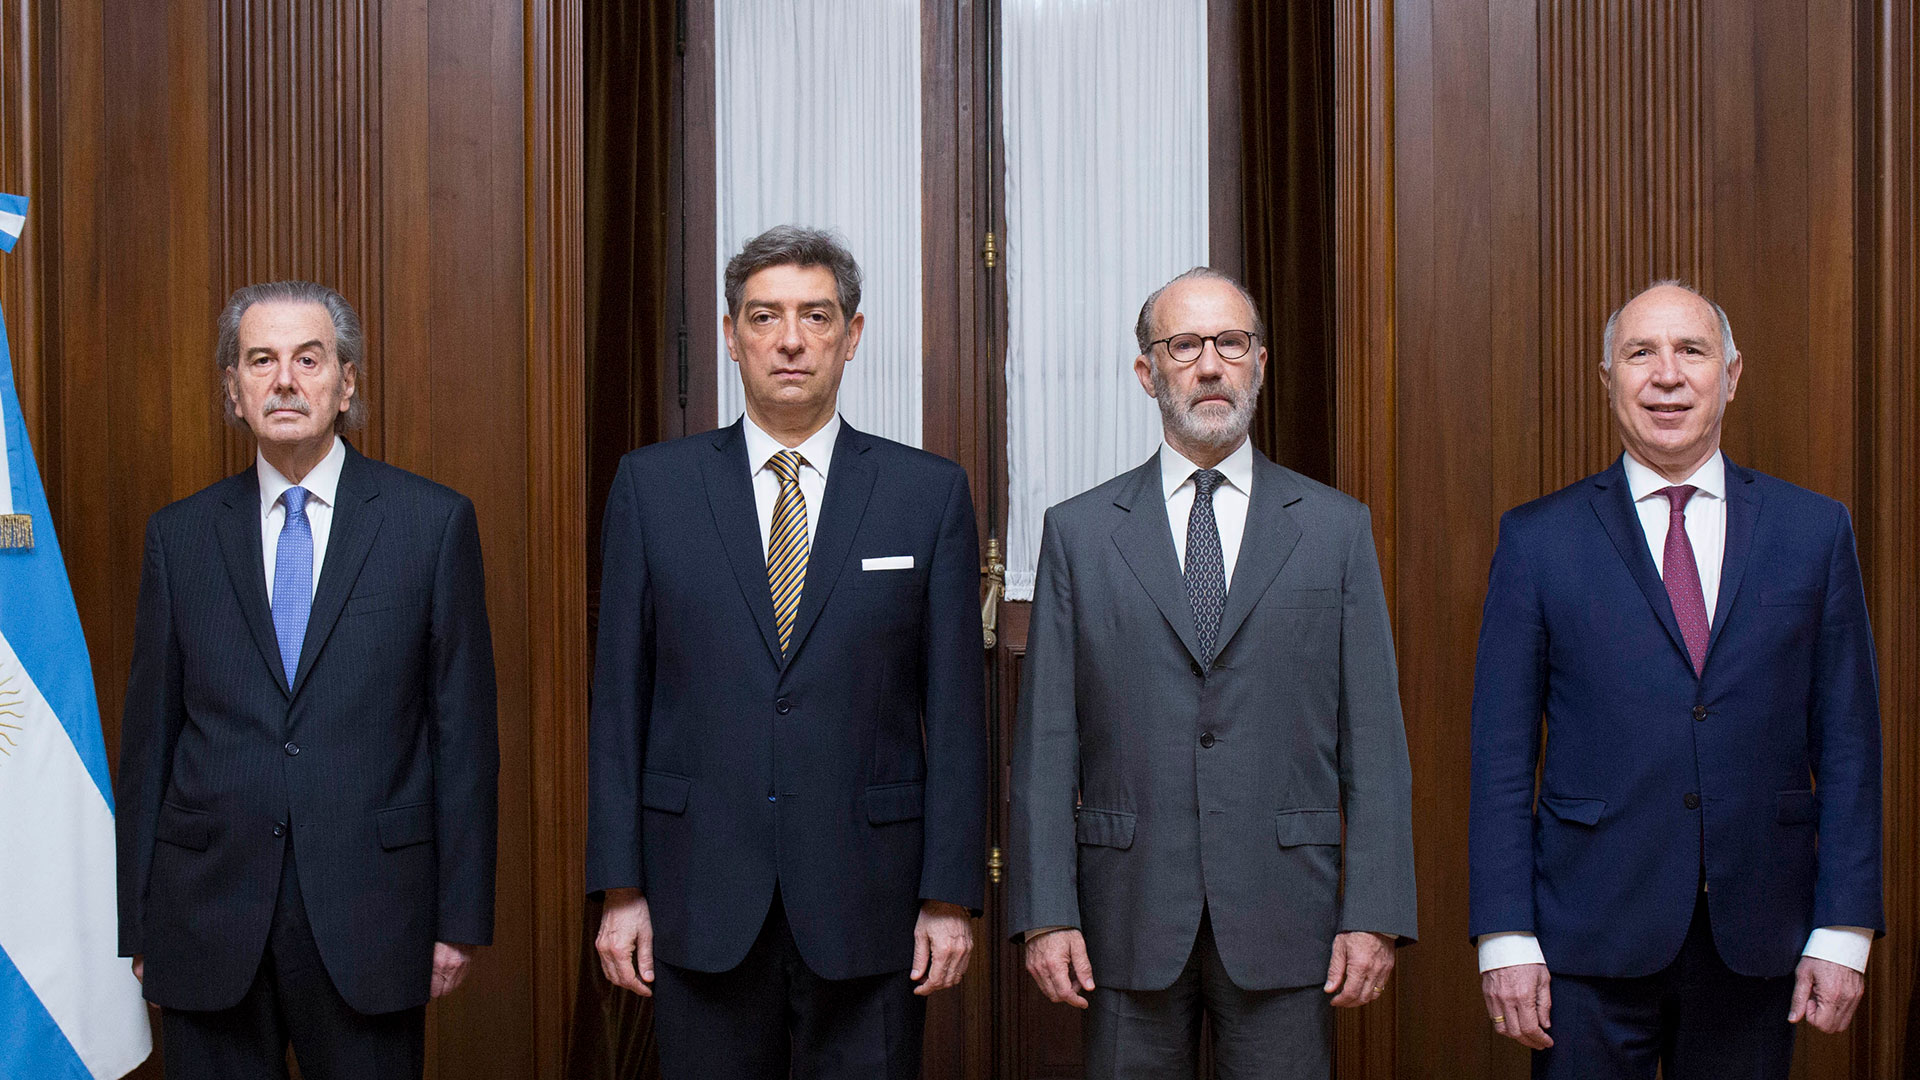 Horacio Rosatti, Carlos Rosenkratz, Juan Carlos Maqueda y Ricardo Lorenzetti, miembros de la Corte Suprema